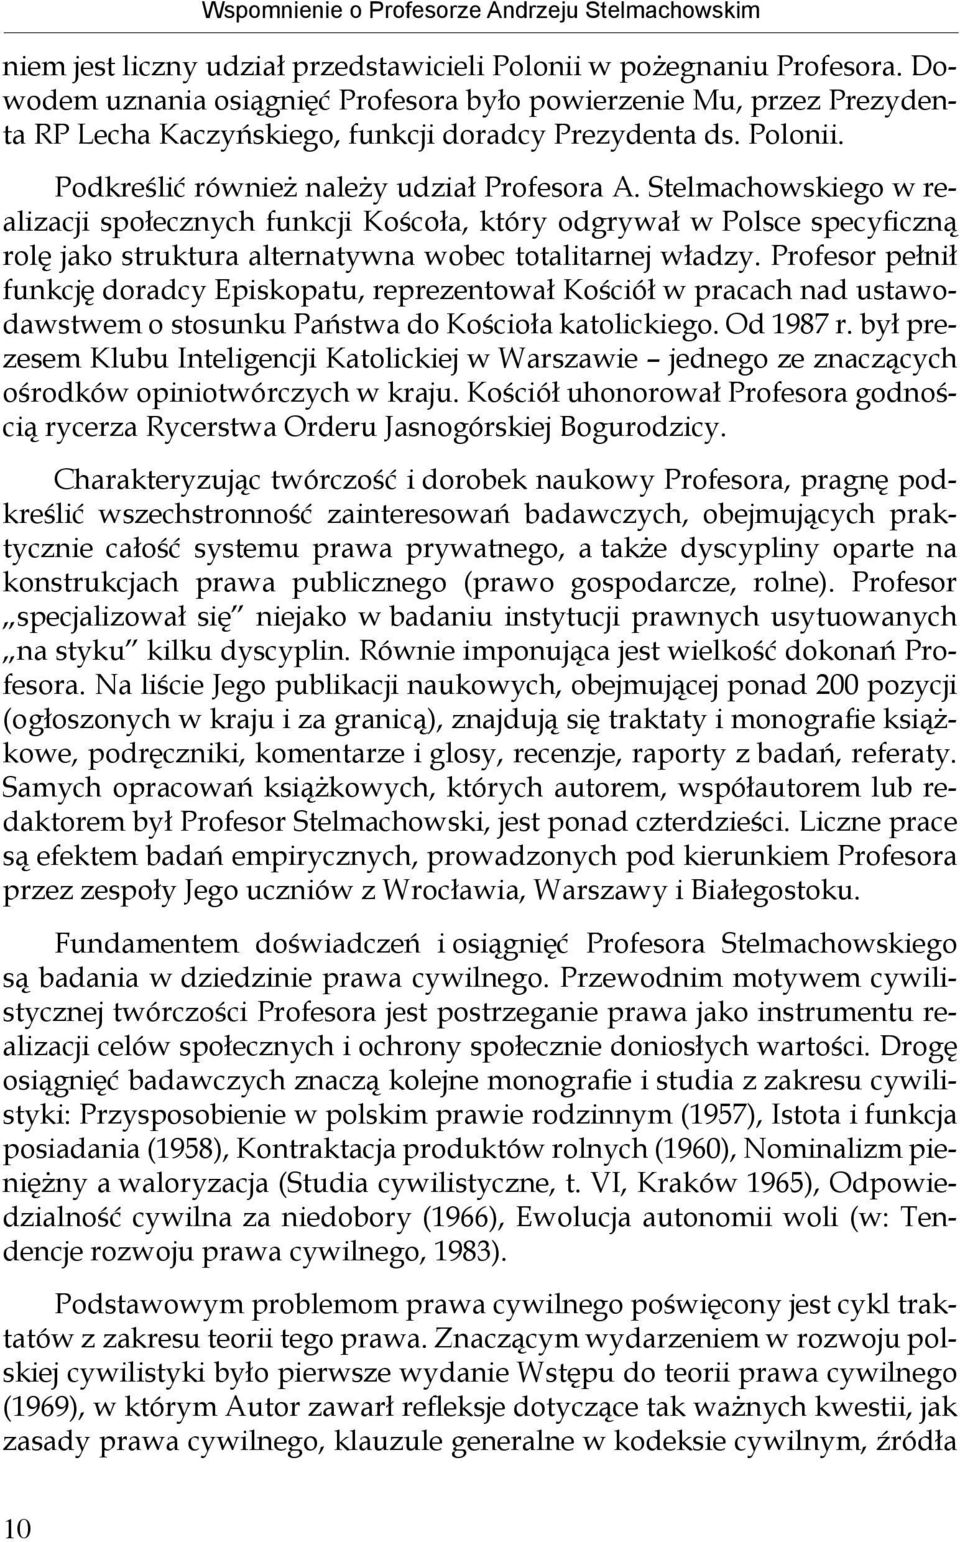 Stelmachowskiego w realizacji społecznych funkcji Koścoła, który odgrywał w Polsce specyficzną rolę jako struktura alternatywna wobec totalitarnej władzy.